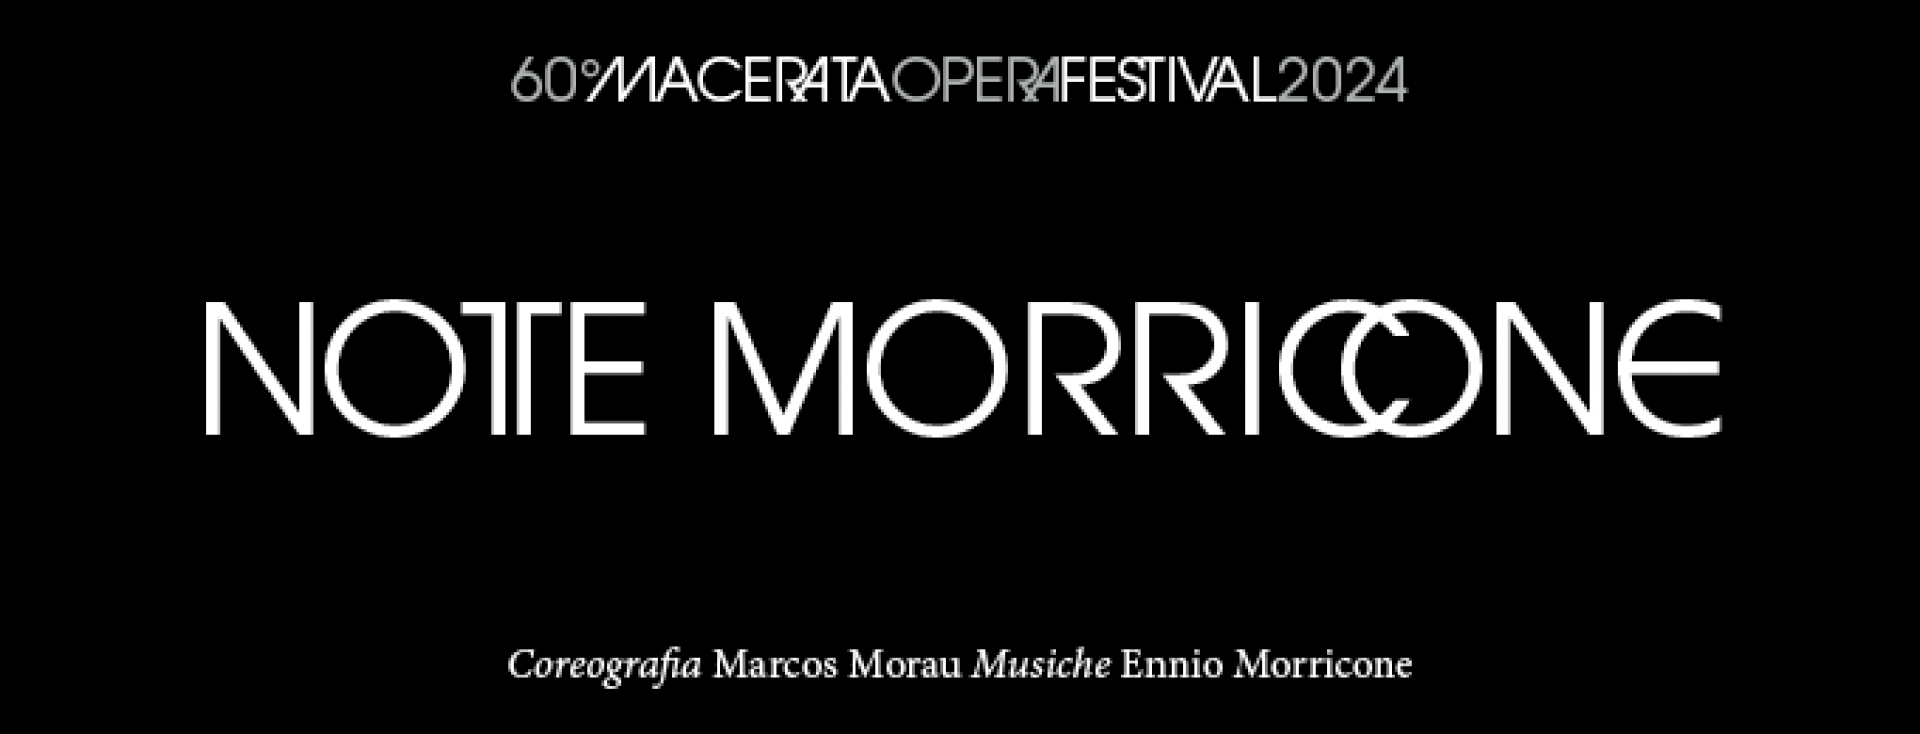 モリコーネの夜 -マチェラータ オペラ フェスティバル 2024